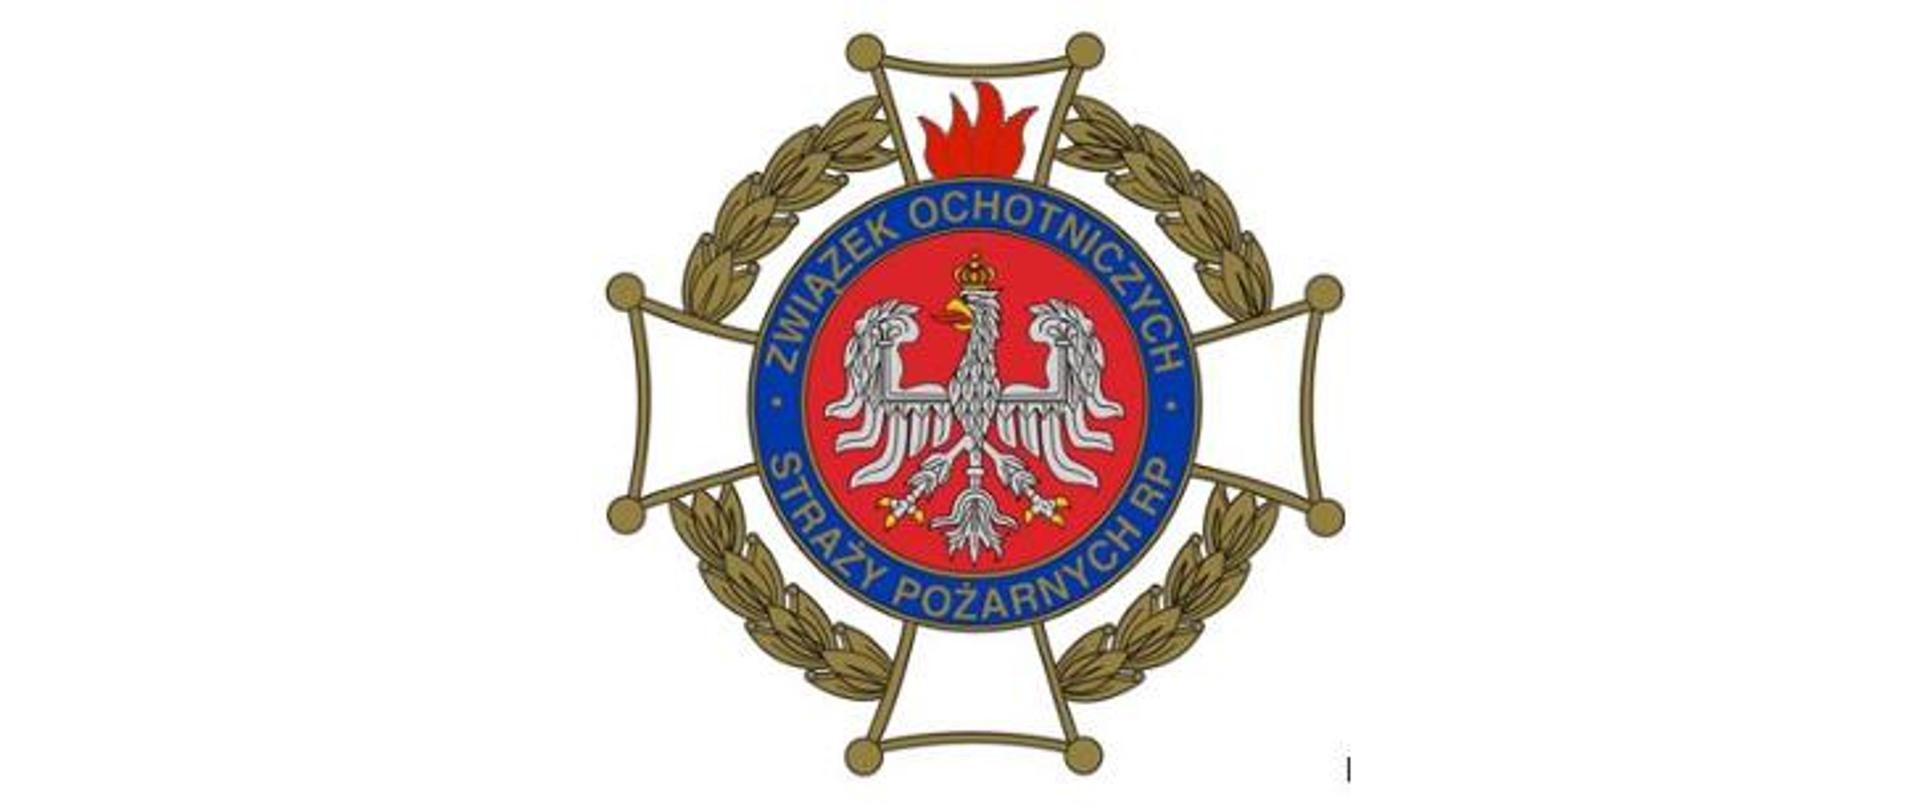 Obraz na białym tle przedstawia logo Ochotniczej Straży Pożarnej